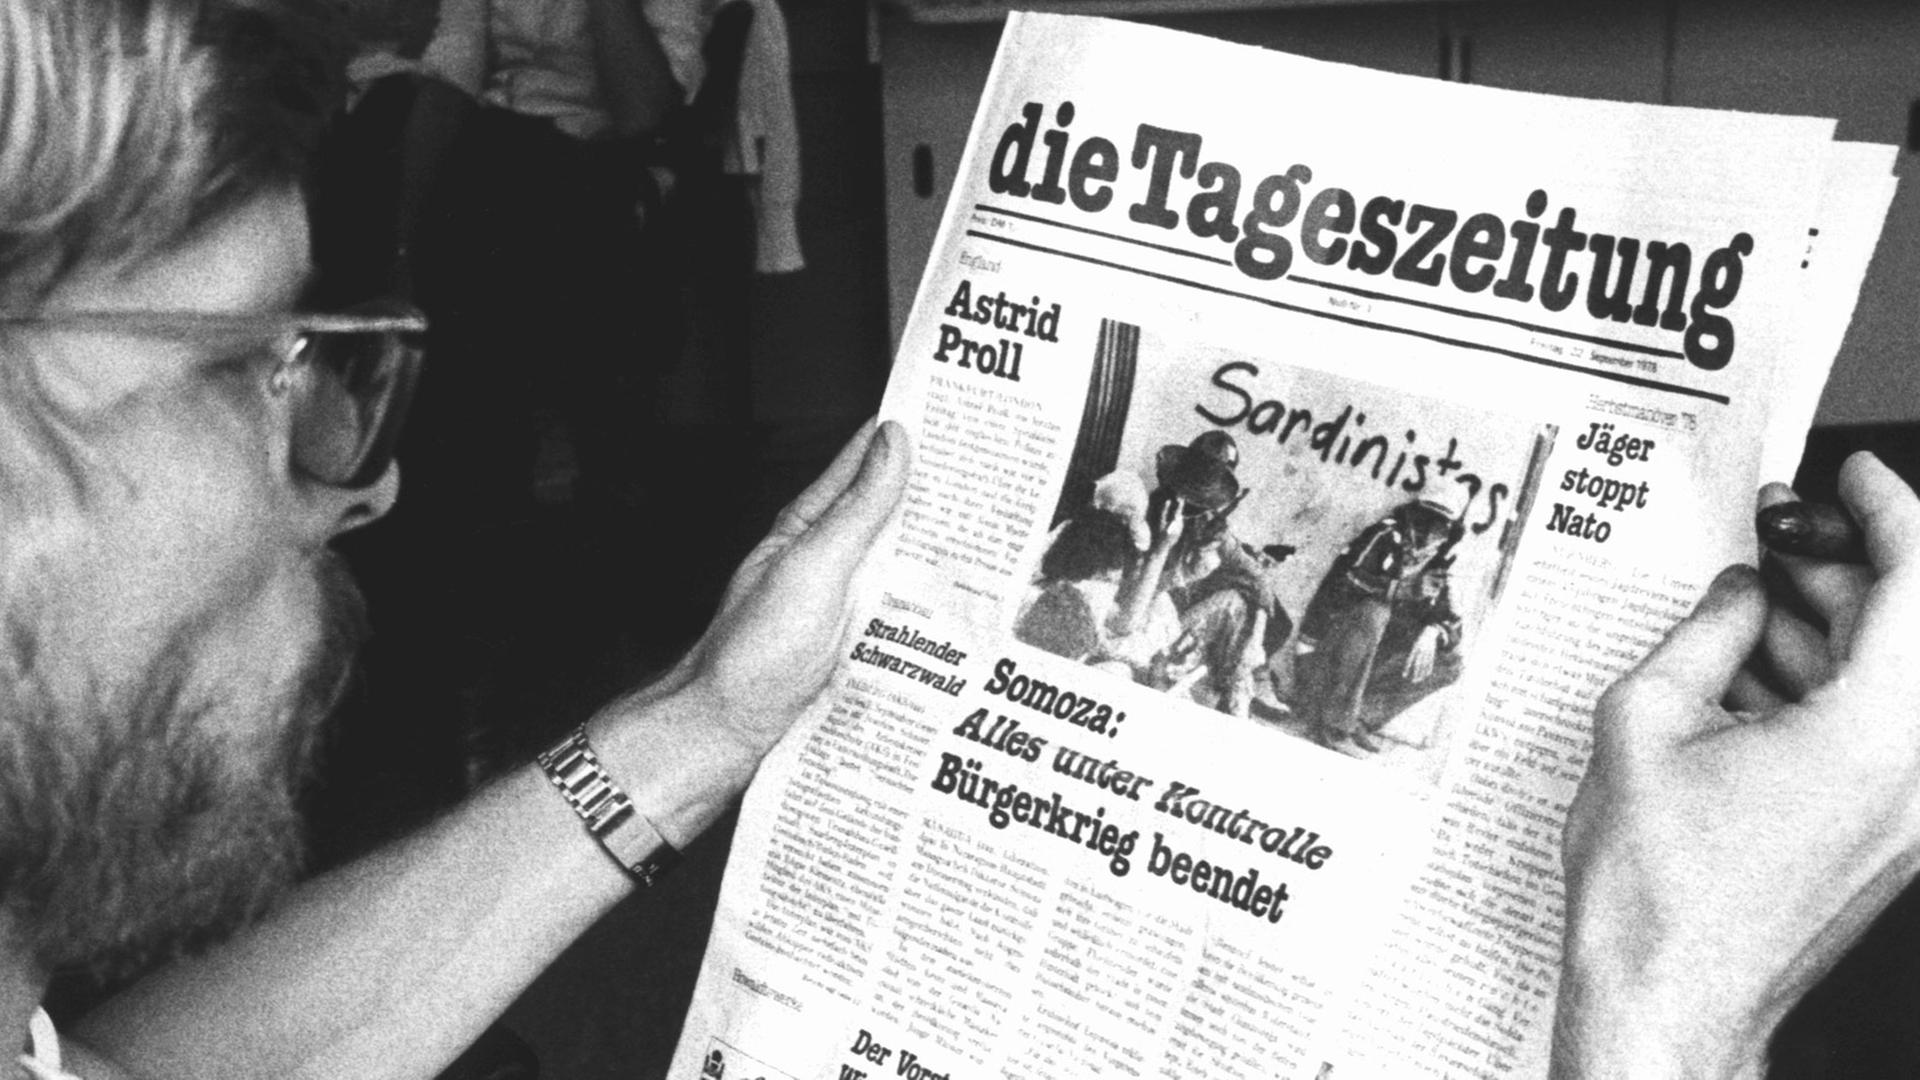 Die Nullnummer der alternativen "tageszeitung", allgemein taz genannt, erschien im September 1978.